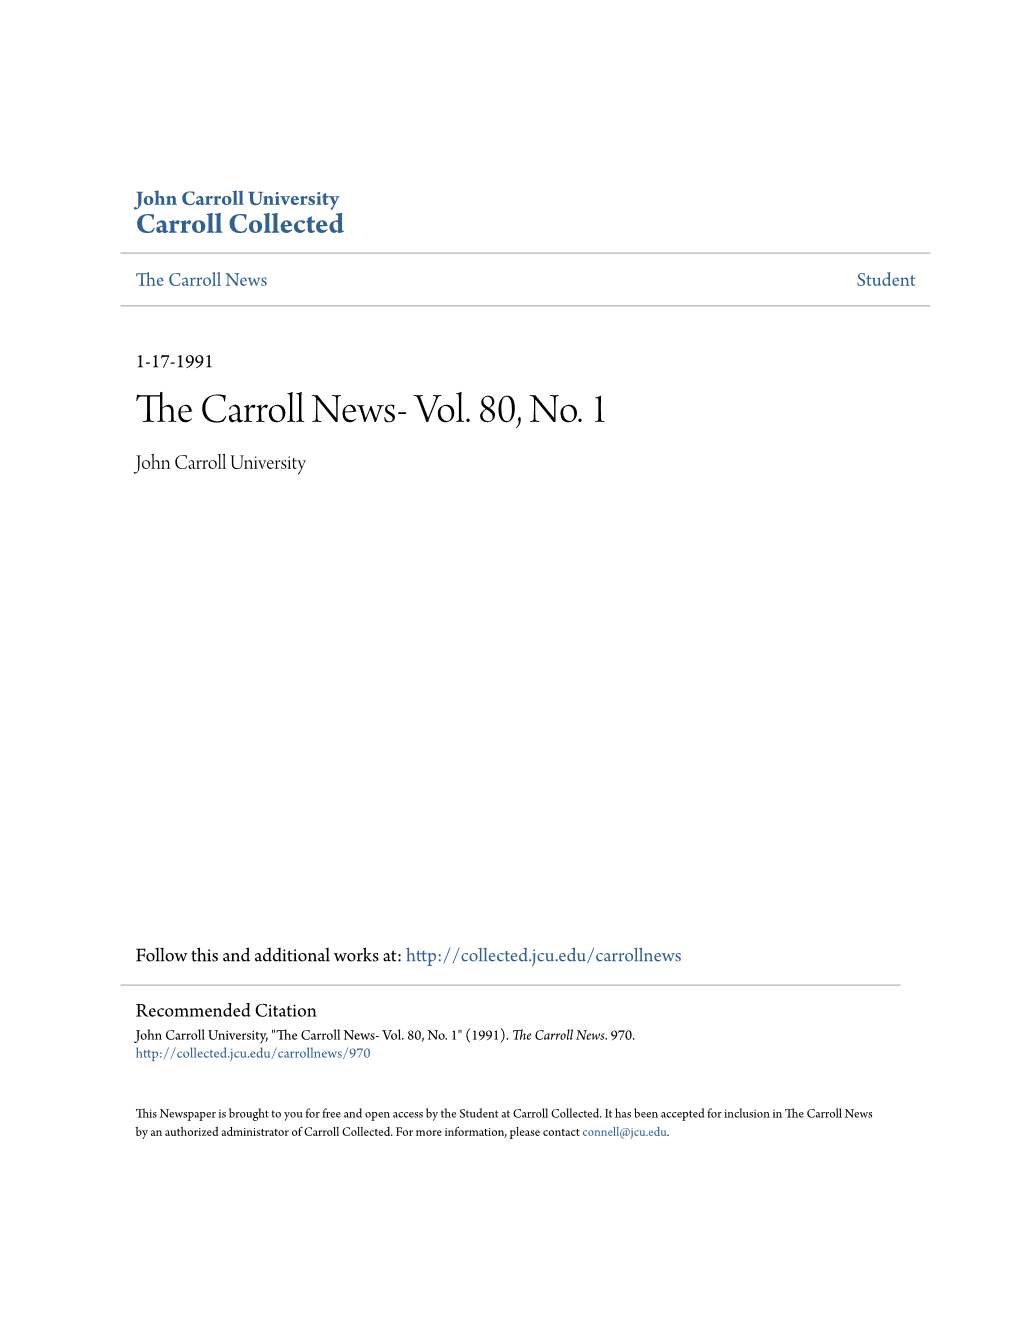 The Carroll News- Vol. 80, No. 1